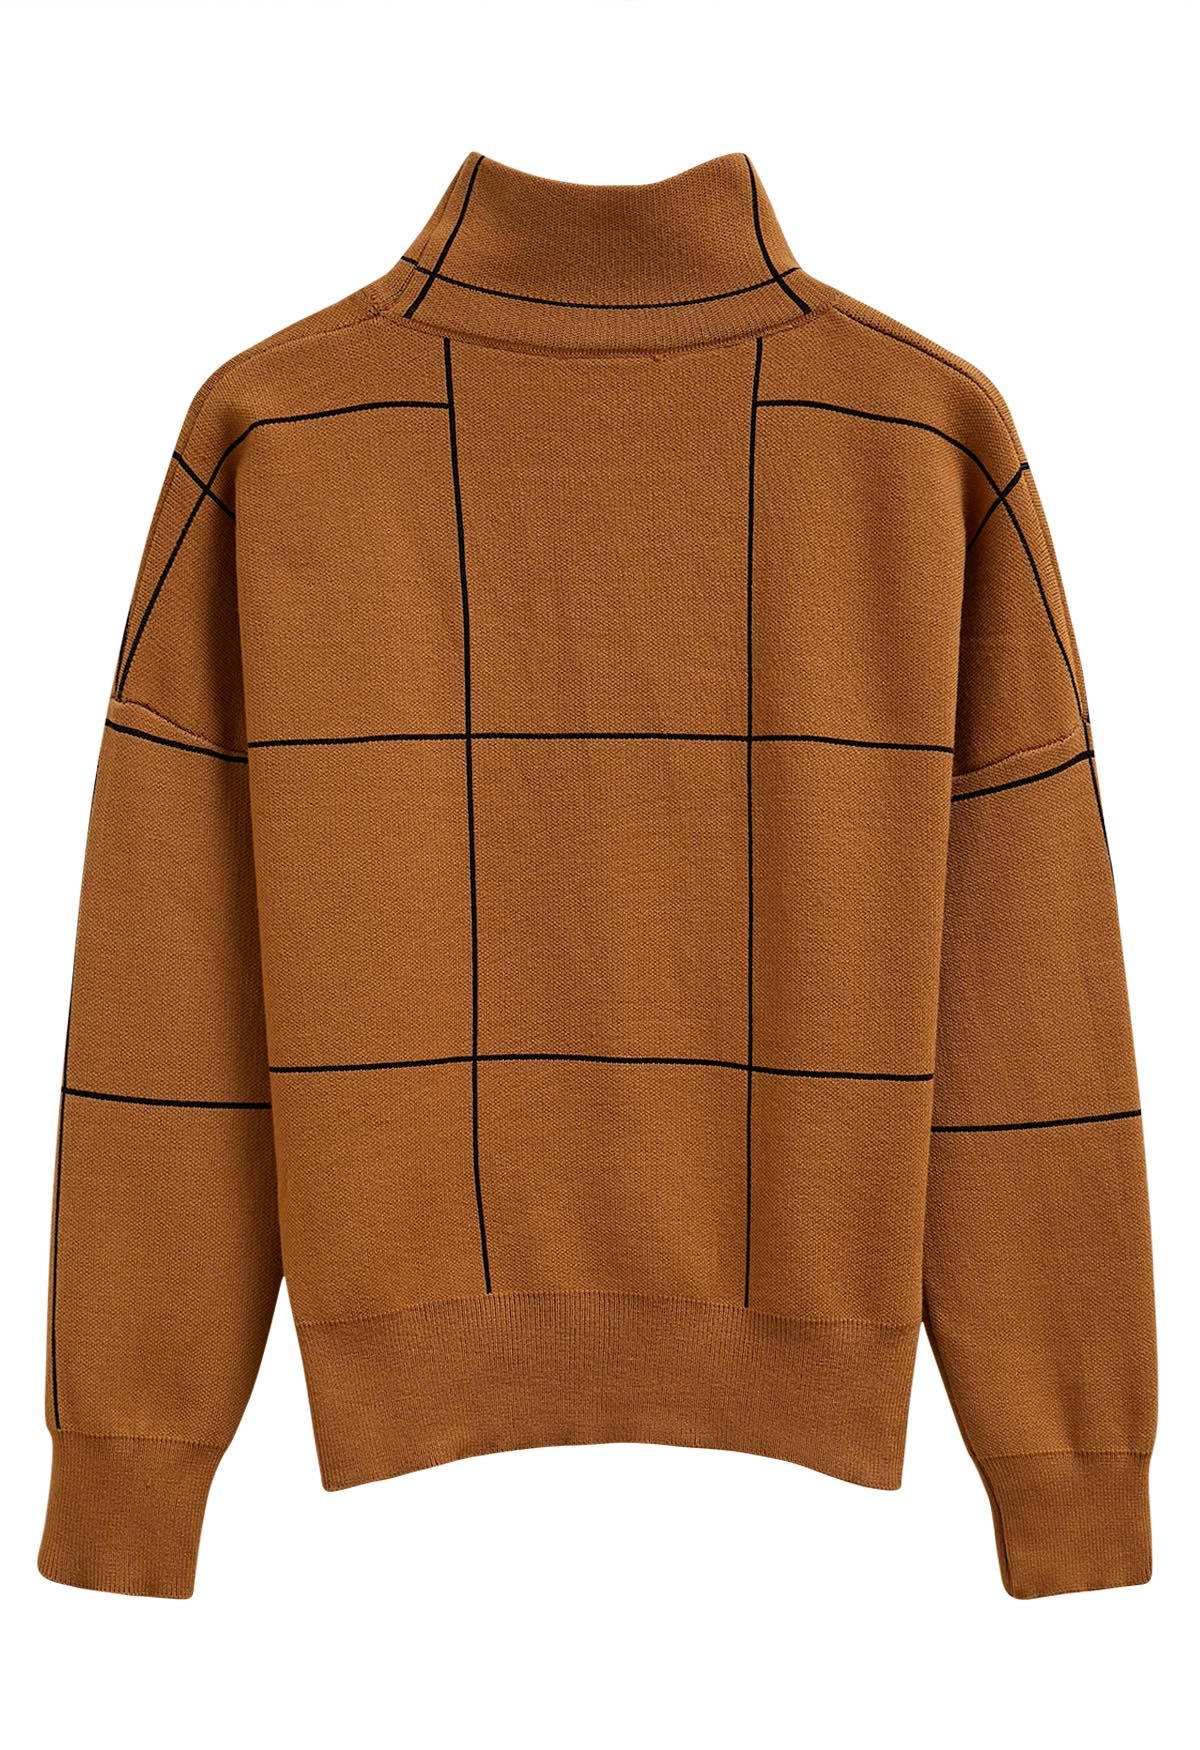 Grid Turtleneck Sweater in Pumpkin